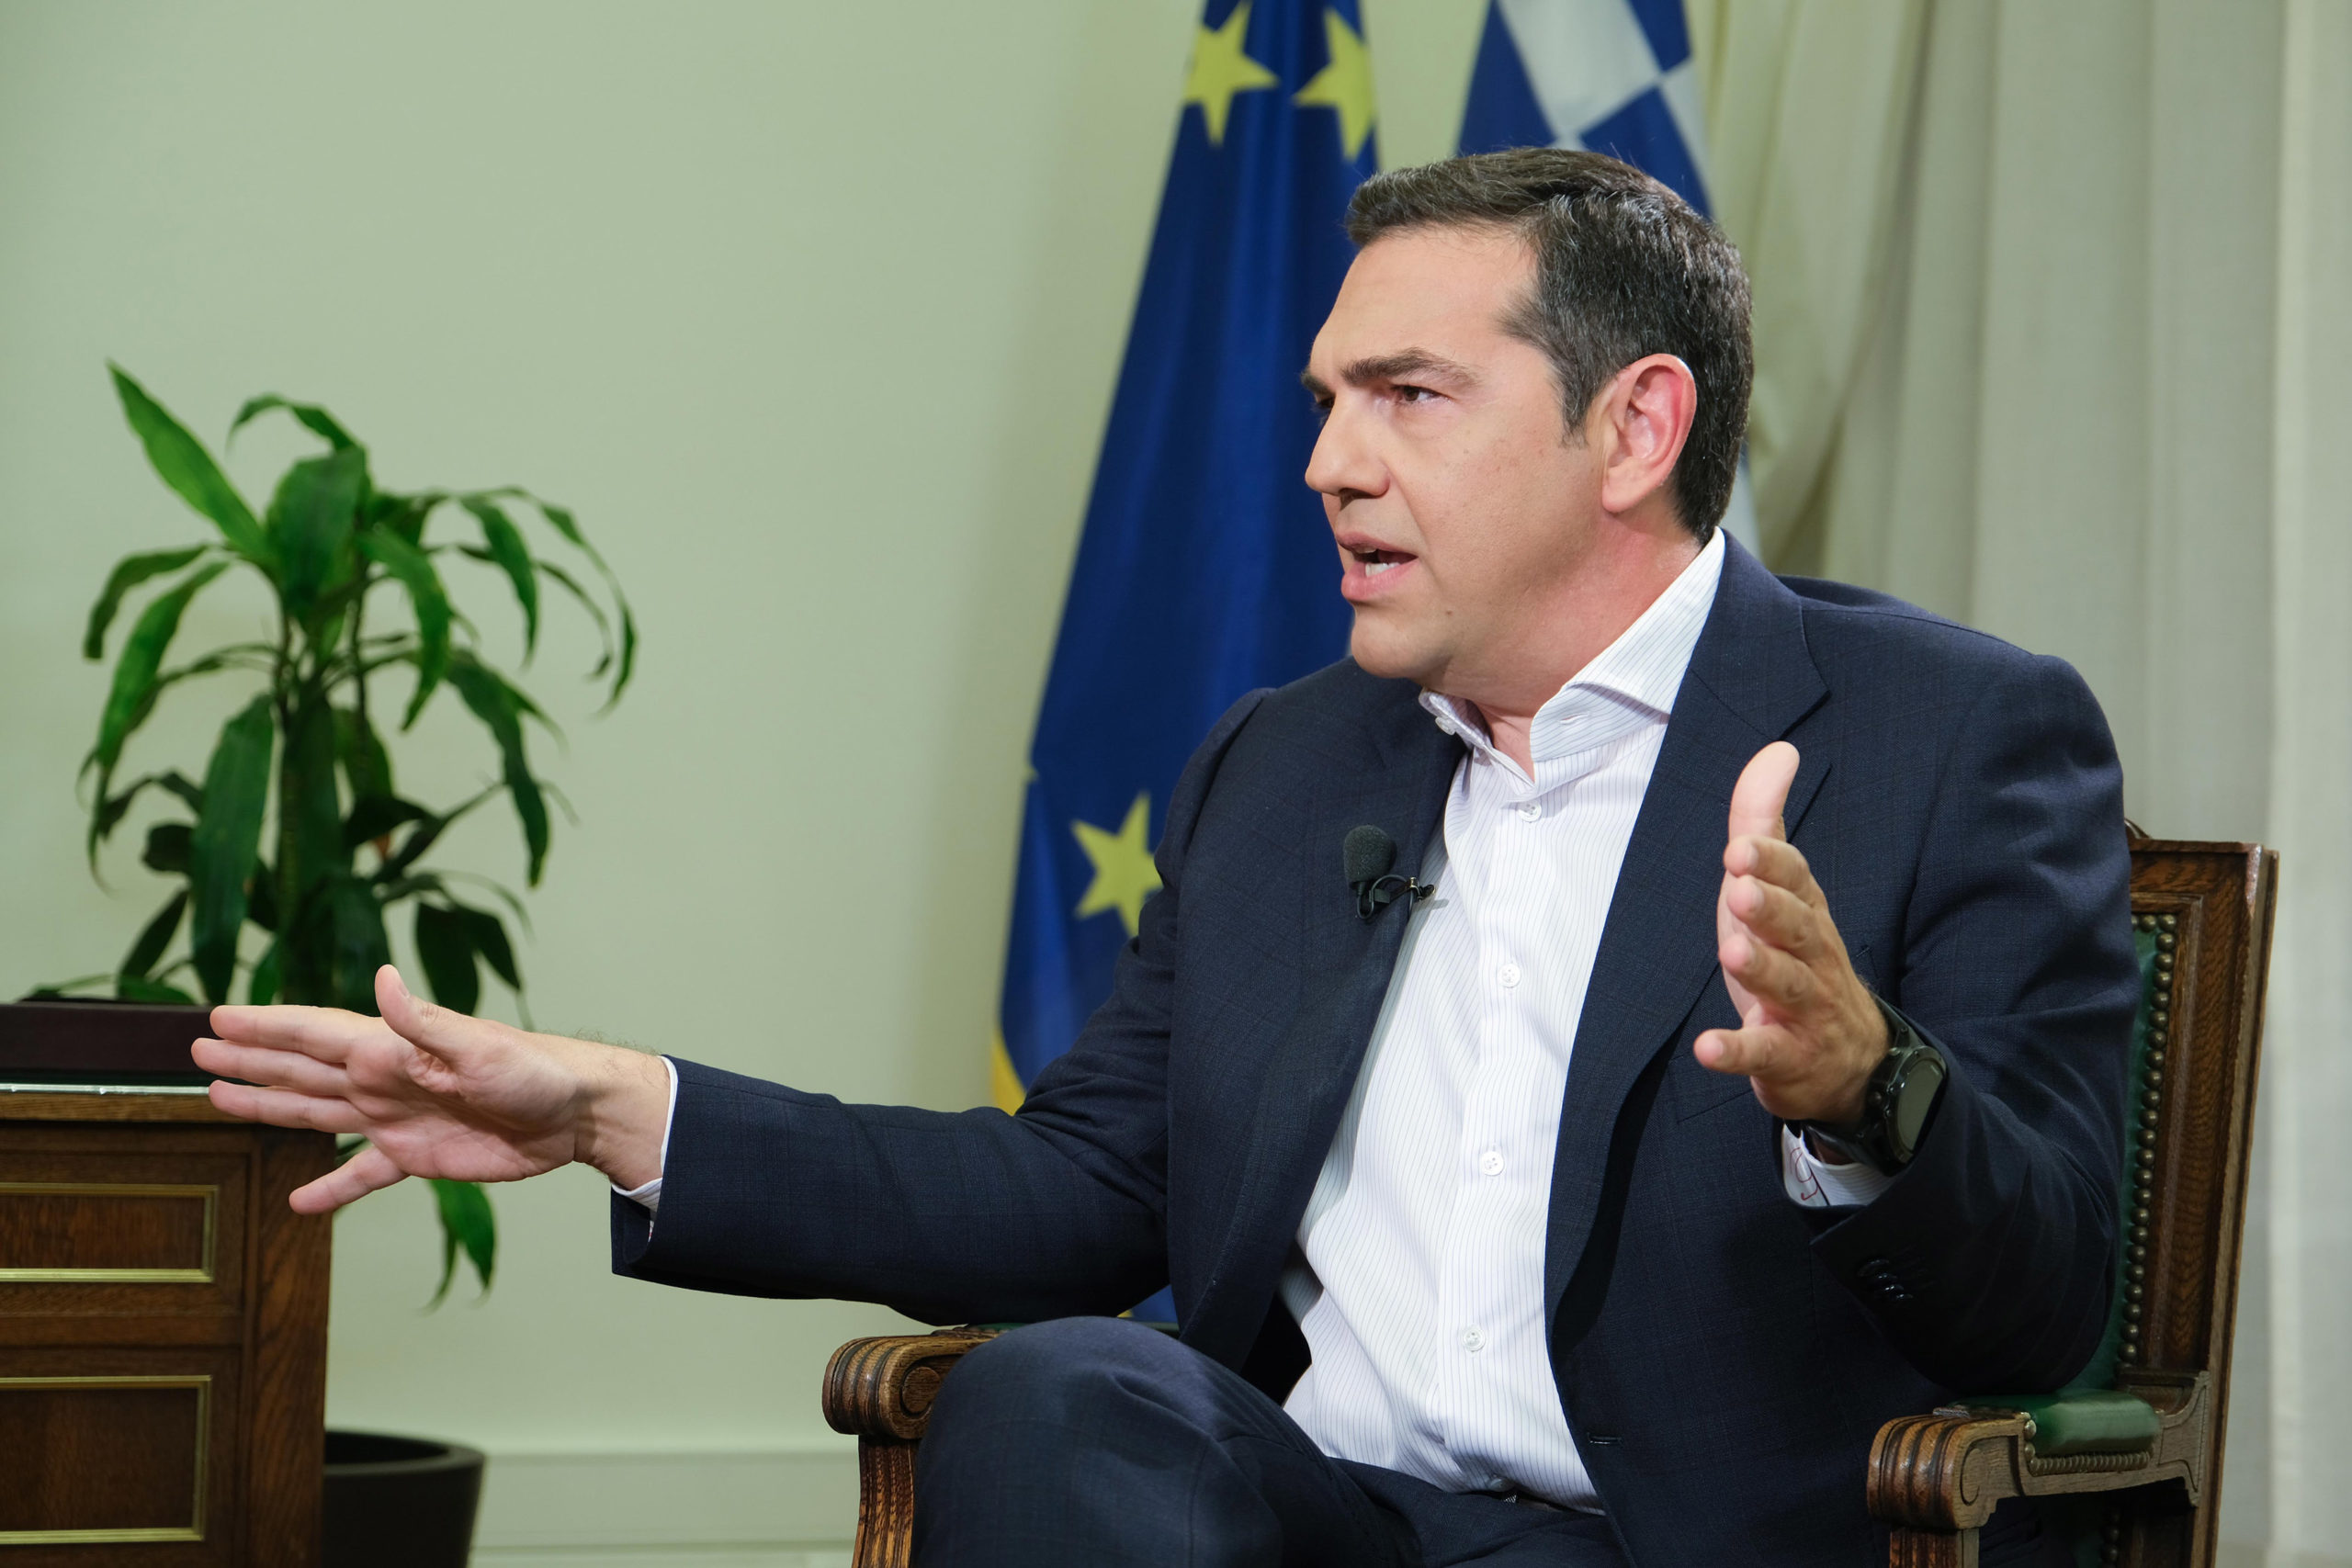 Αλέξης Τσίπρας: "ετούτη την κρίσιμη ώρα η χώρα δεν έχει κυβέρνηση"